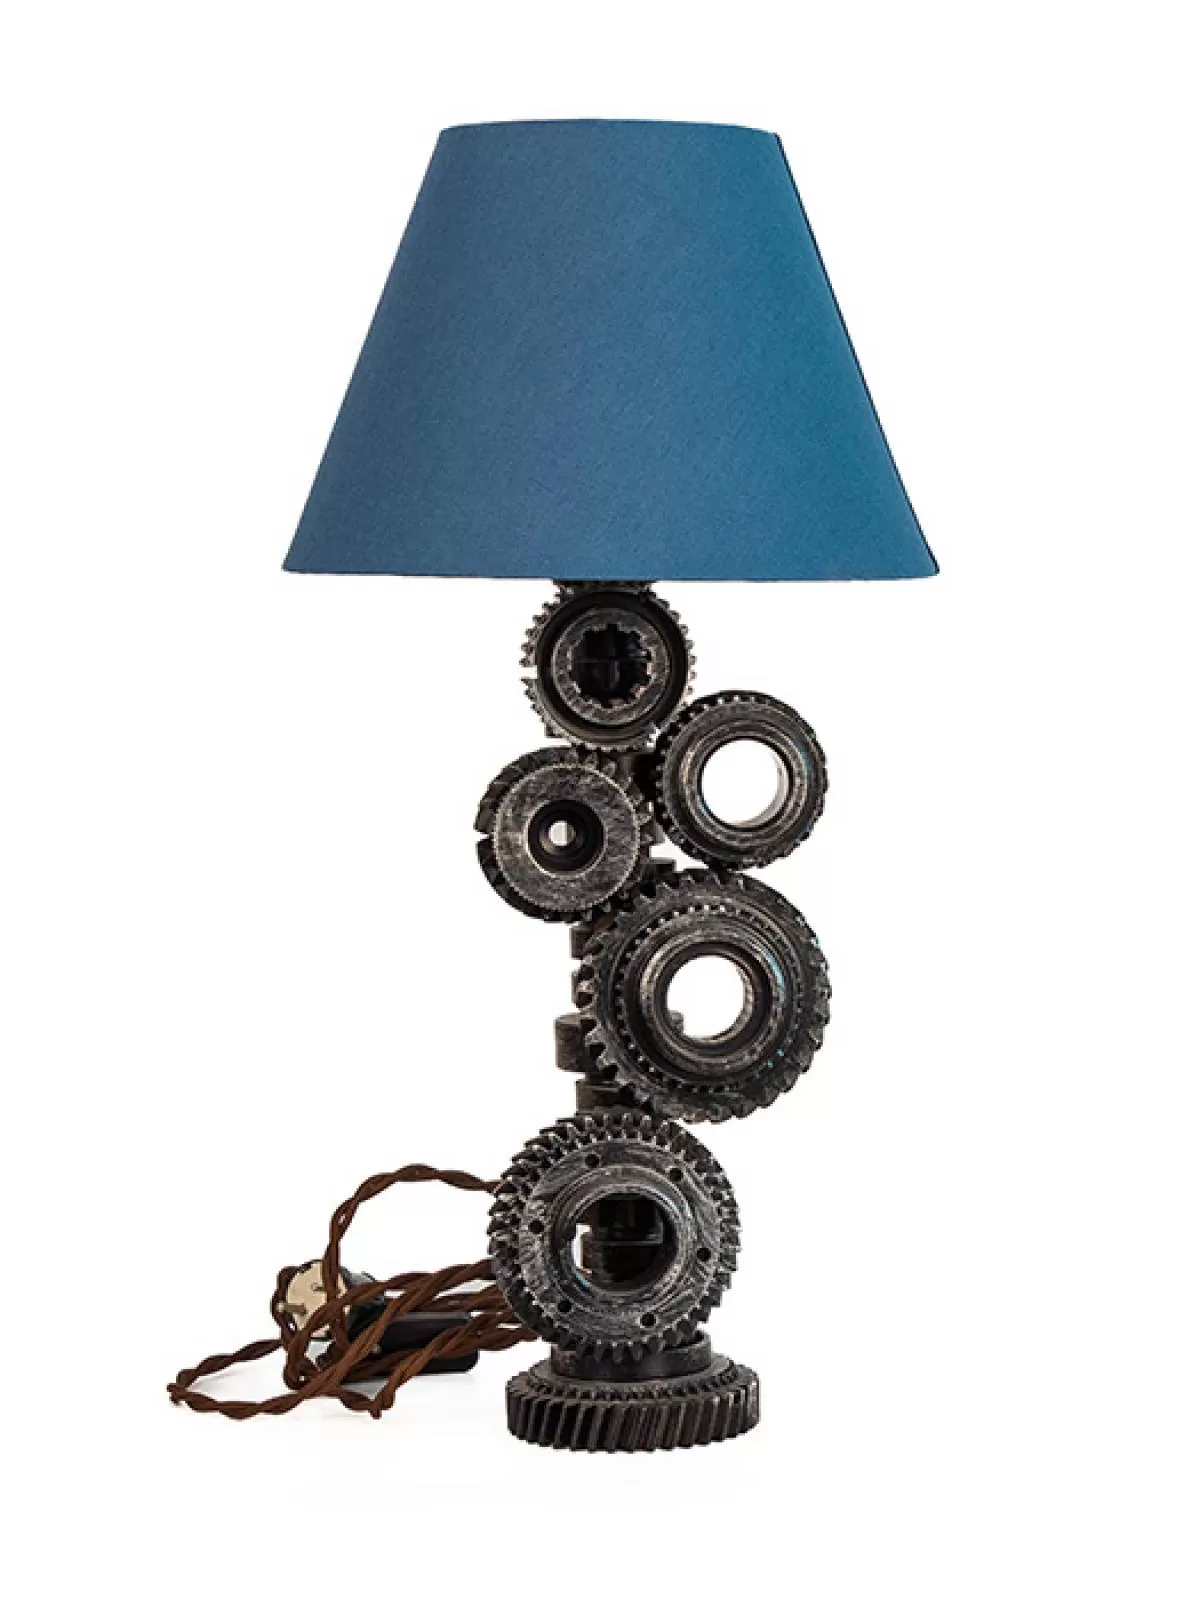 Светильник «Шестерни» с синим абажуром. Фотография 1